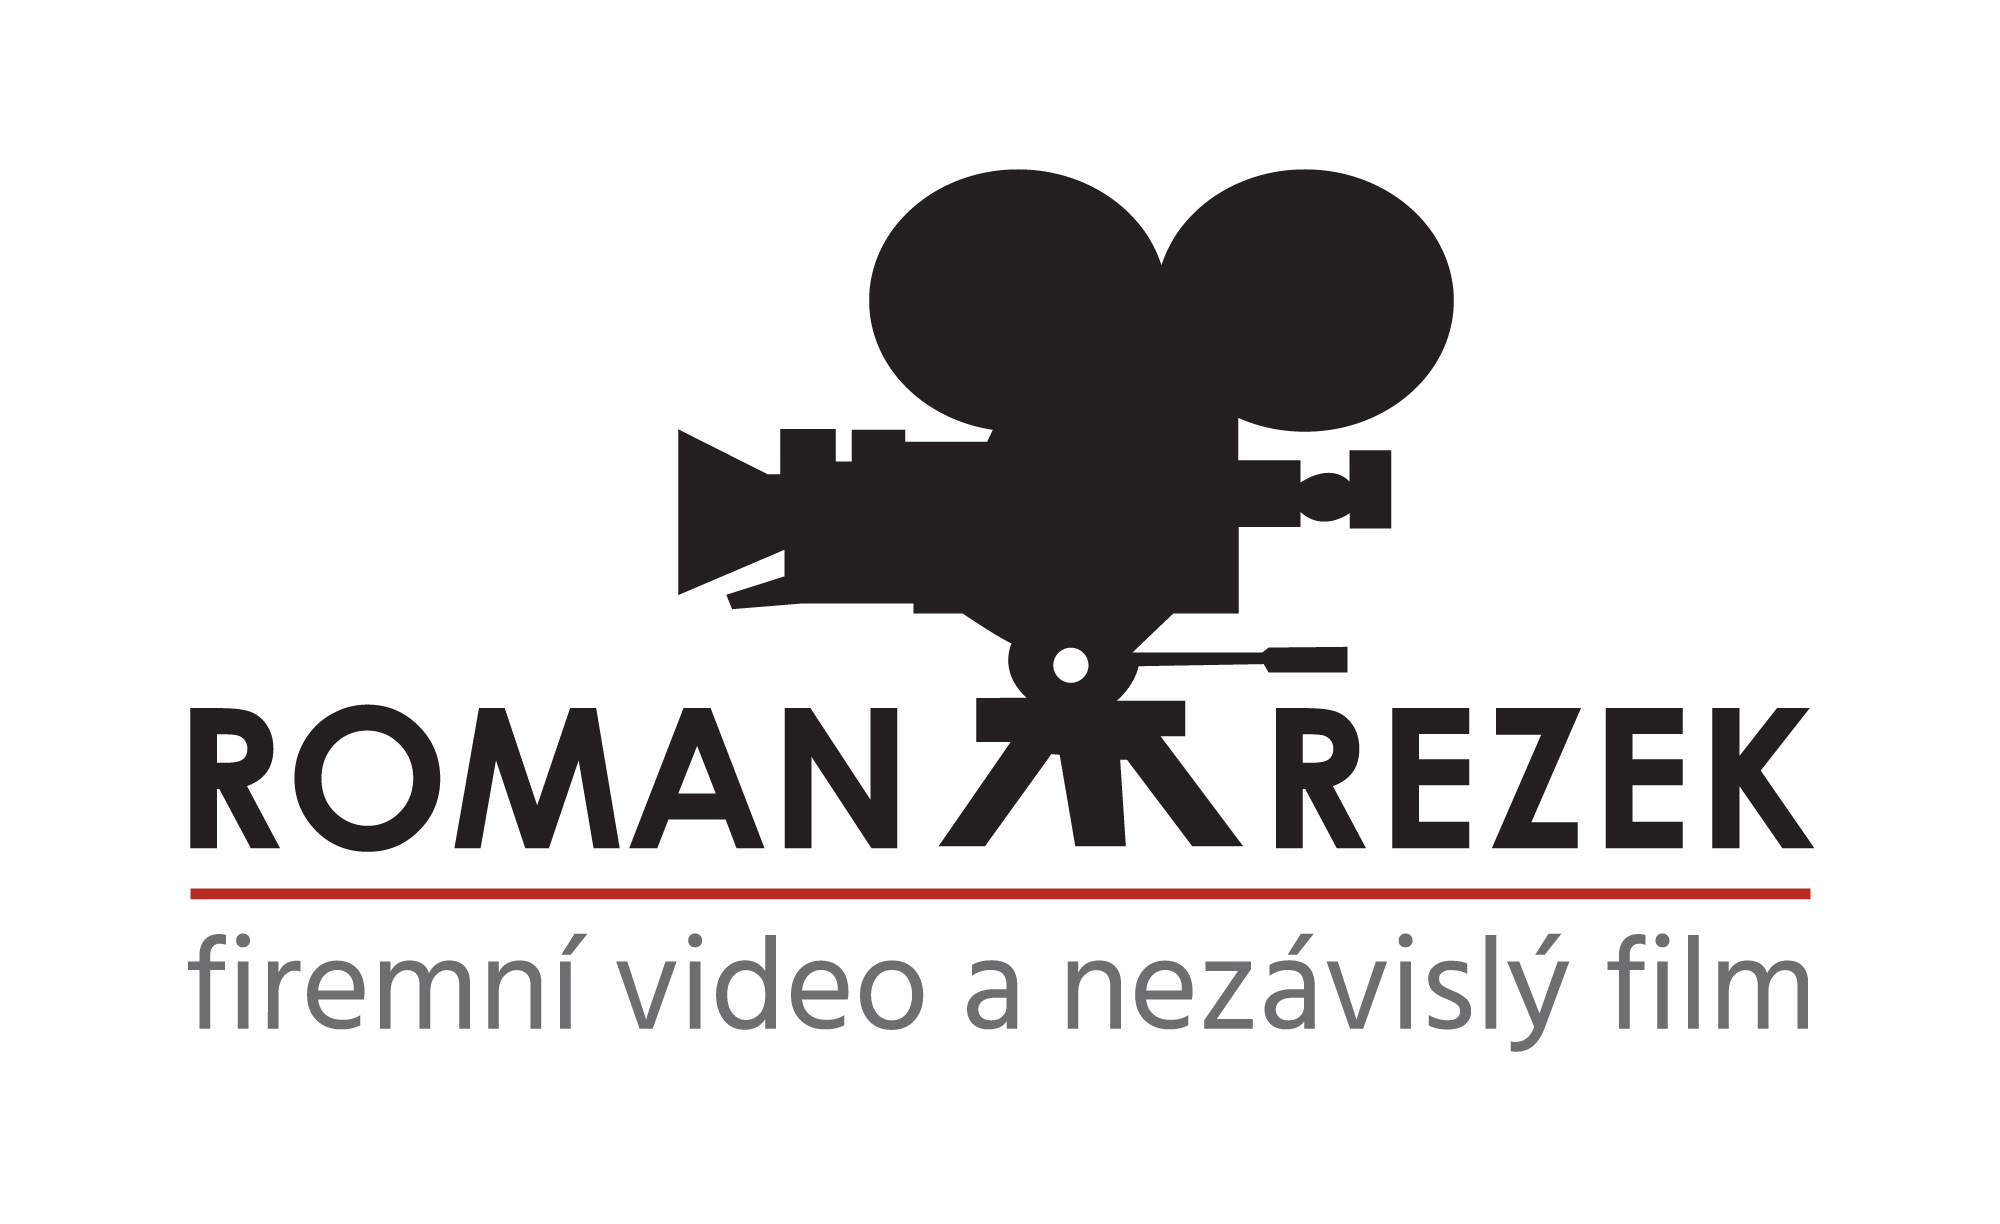 Roman Rezek